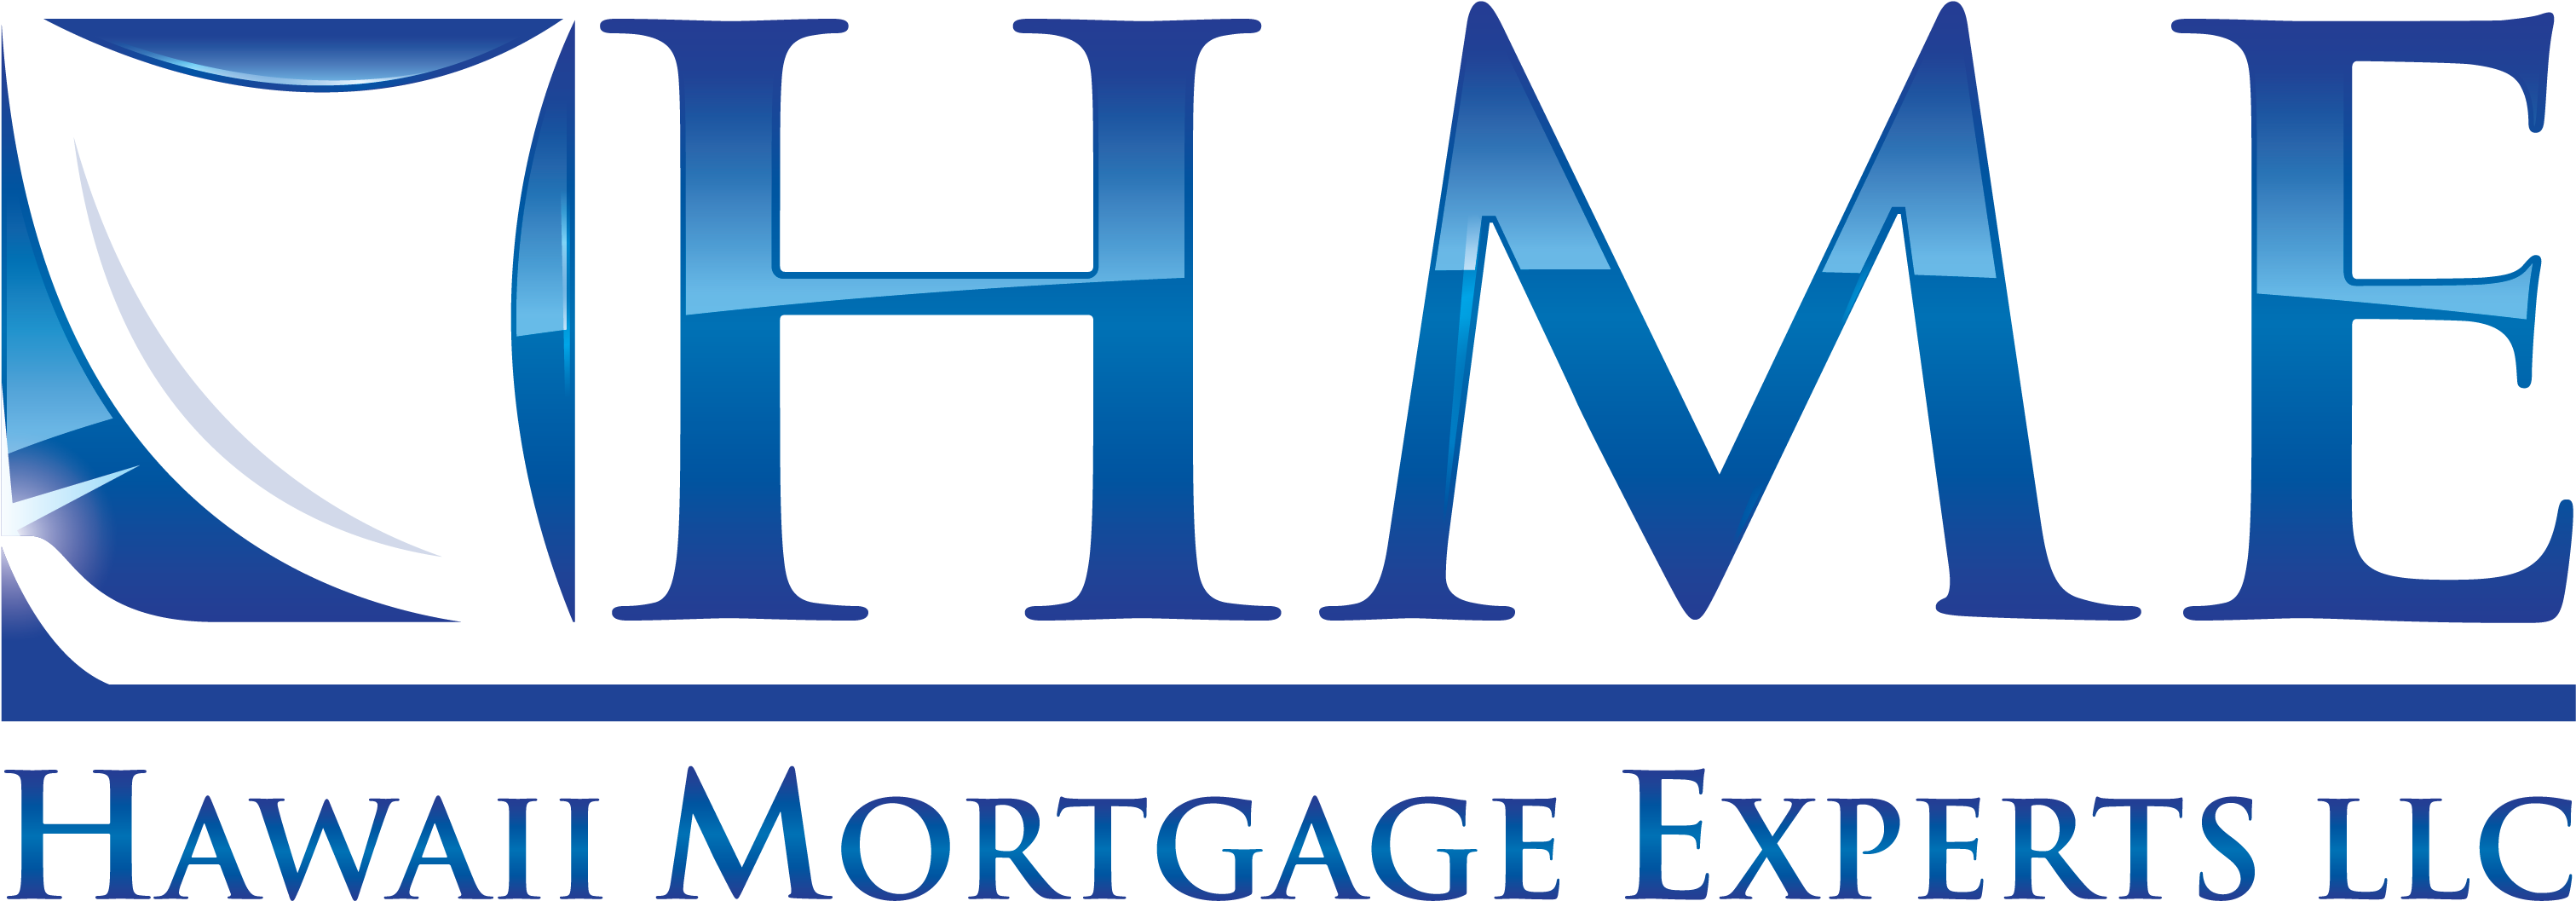 Hawaii Mortgage Experts (3121x1156)